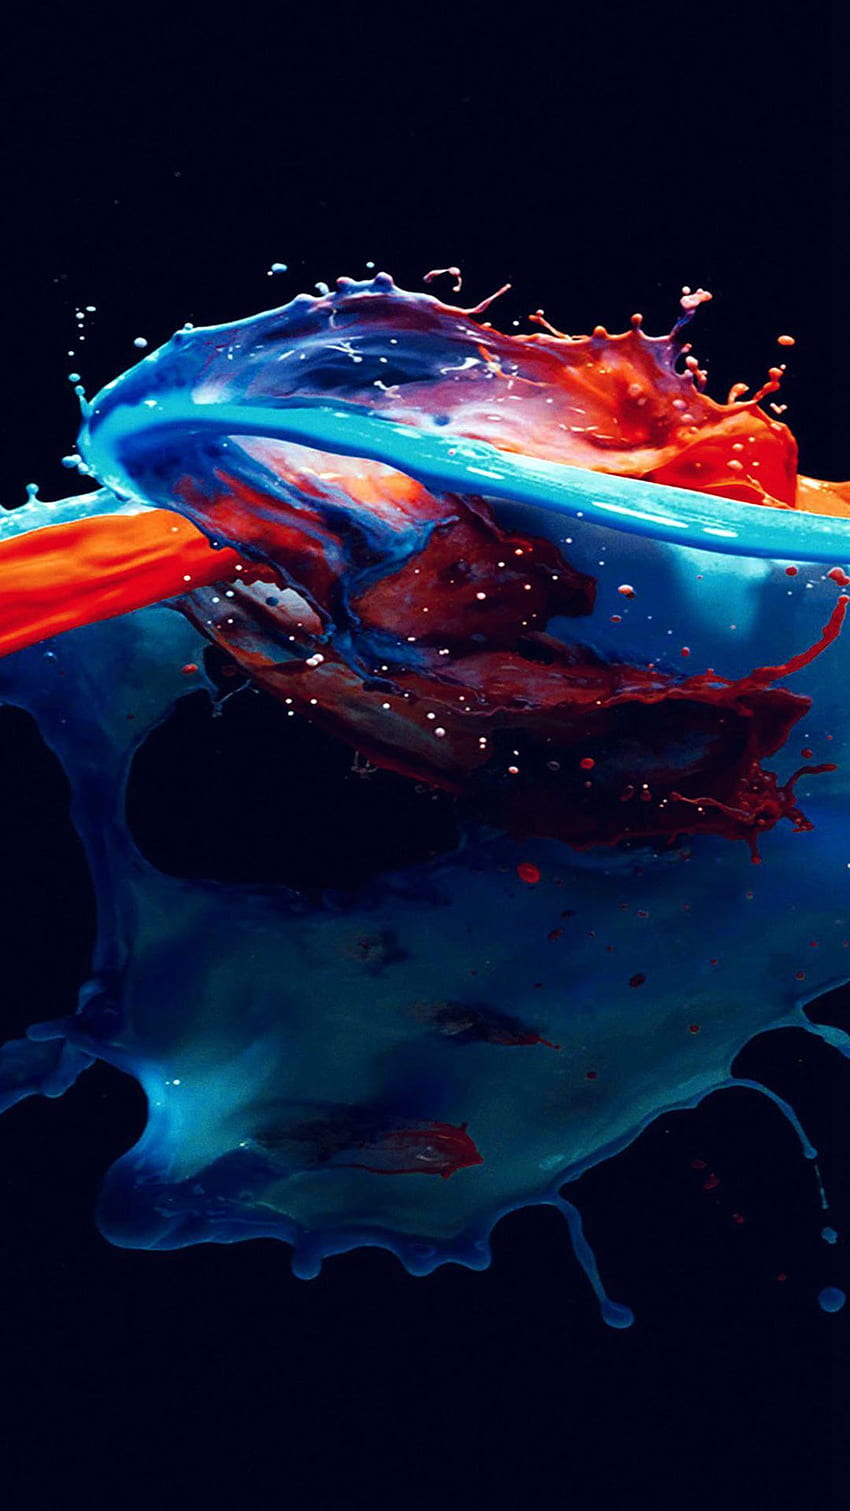 ペイント スプラッシュ アート イラスト ダーク ブルー レッド 水彩画 iPhone 6, 水彩画 HD電話の壁紙